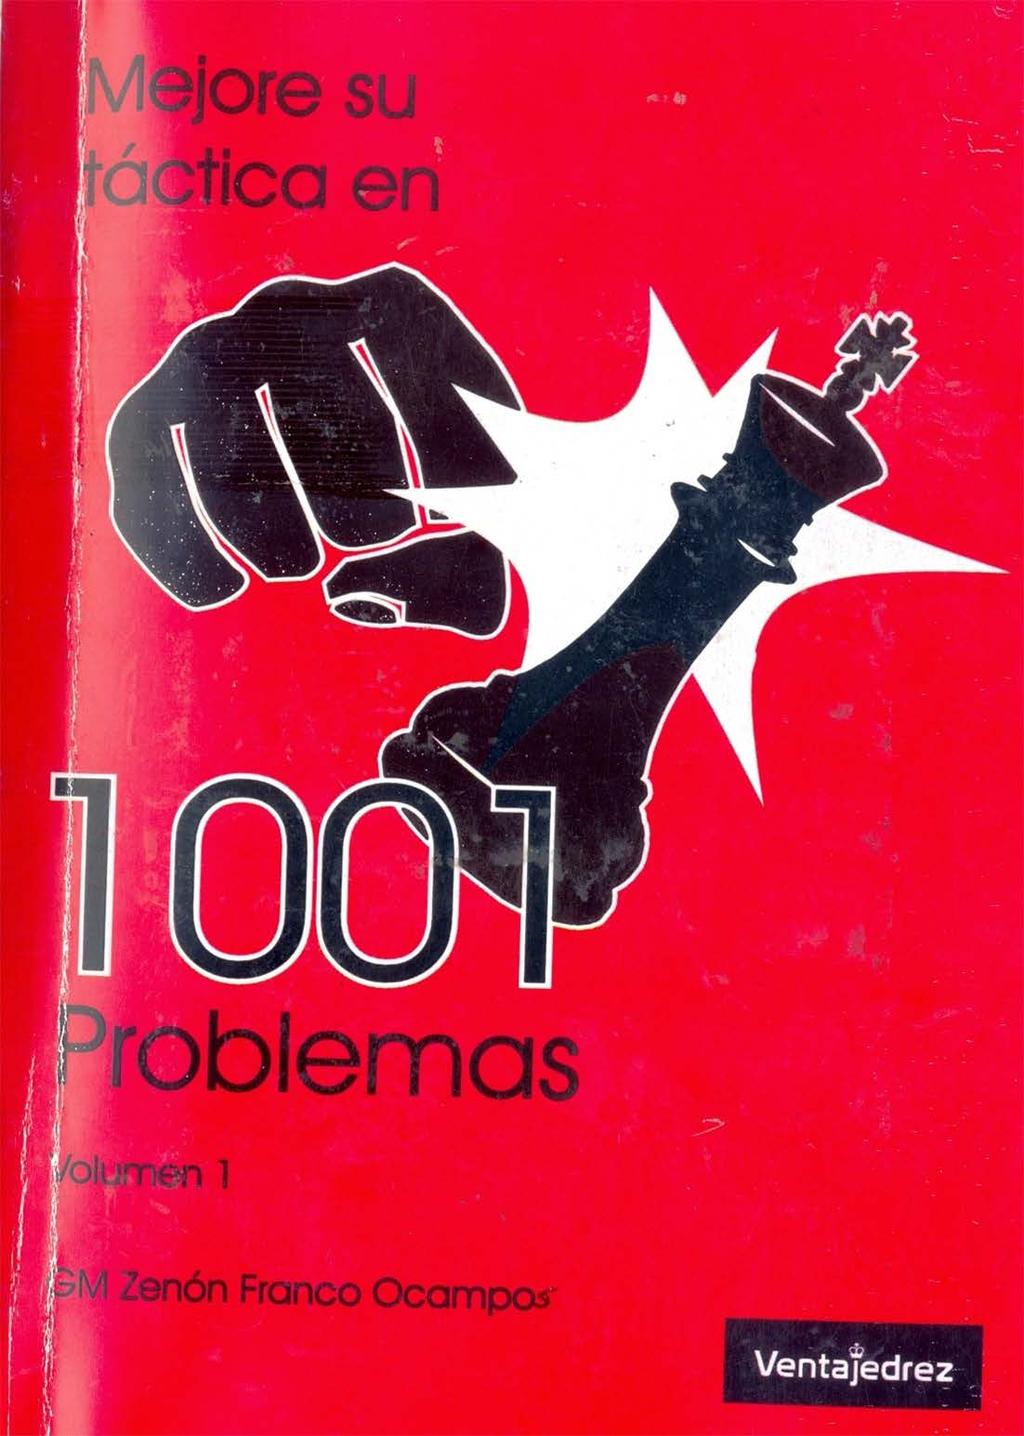 izquierda debate colateral Mejore su táctica en 1001 problemas (Prólogo a la versión argentina) - PDF  Free Download